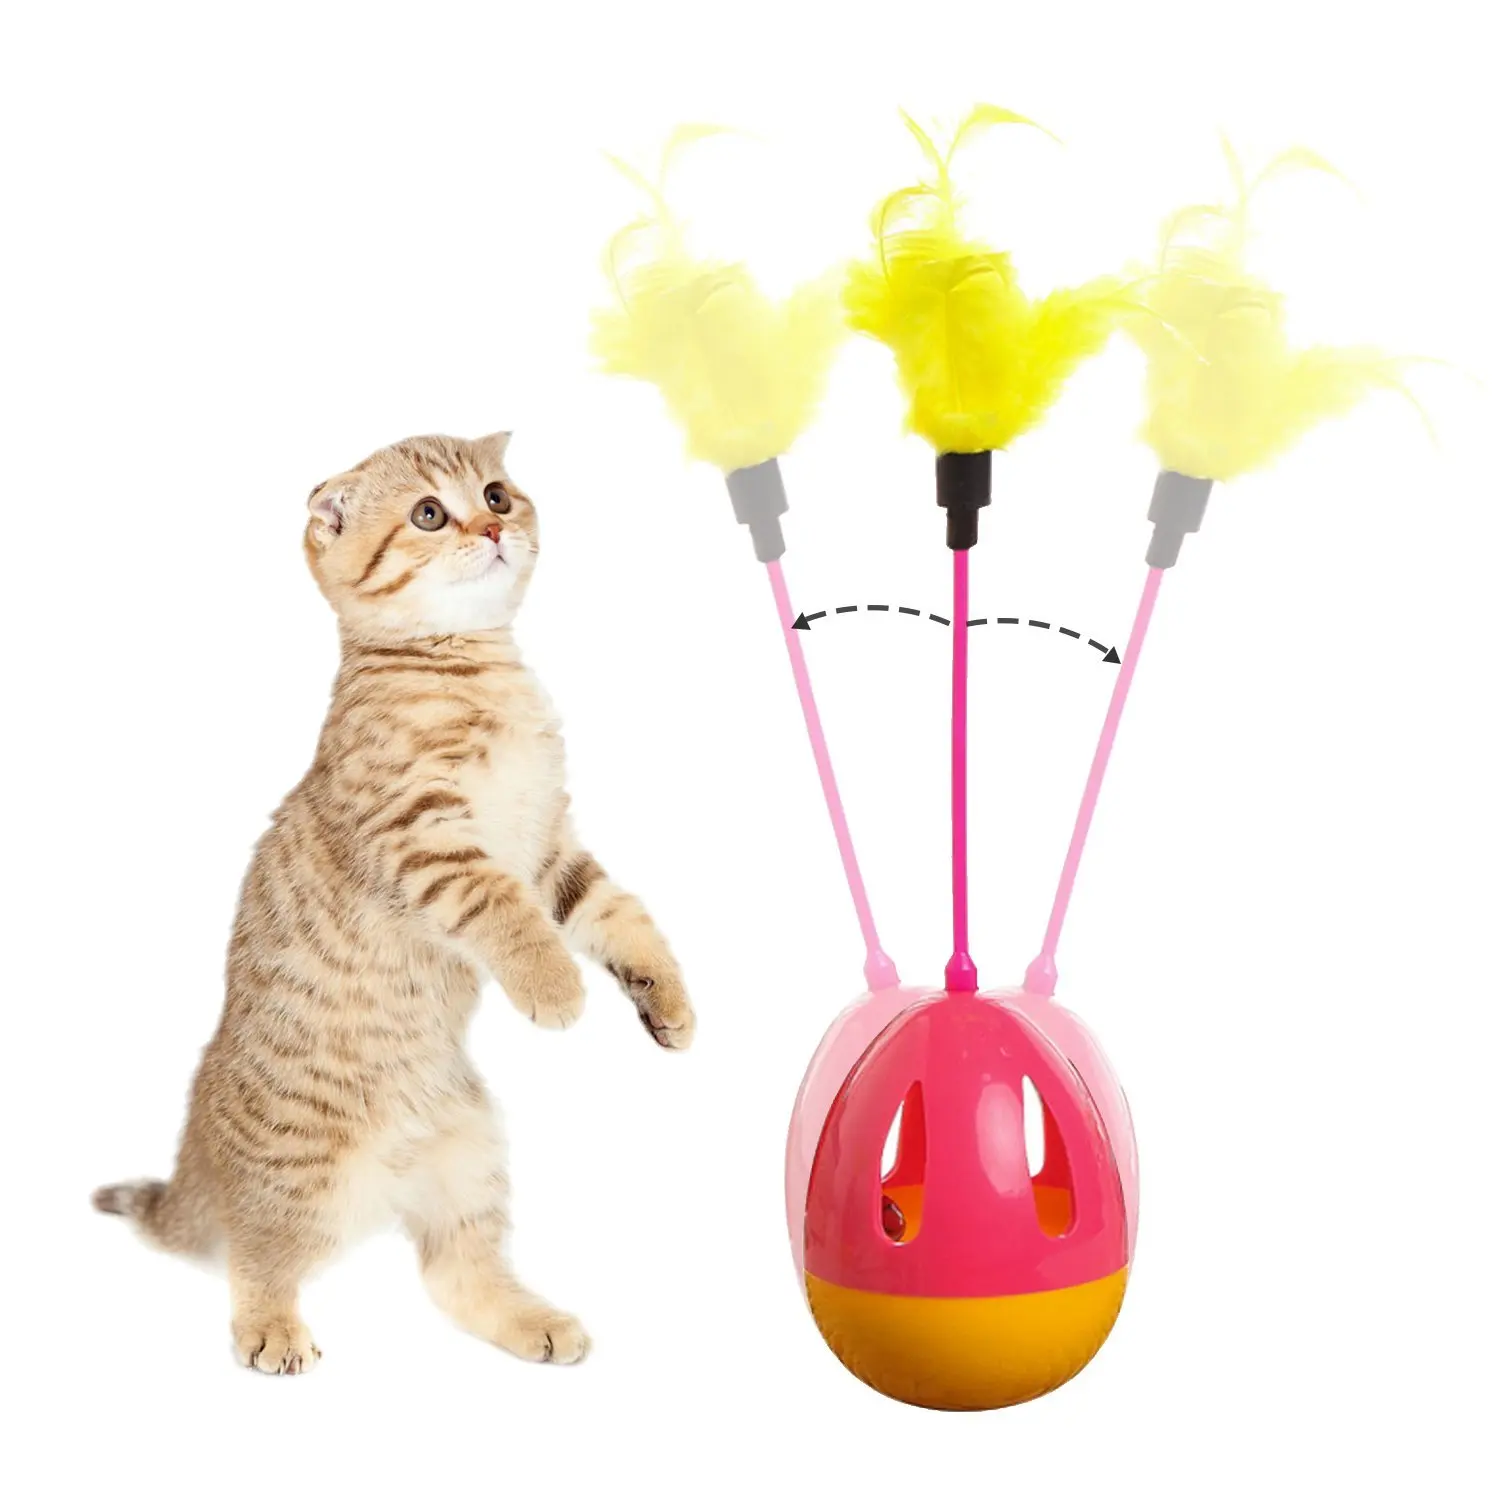 Bascolor стакан Игрушки для котов интерактивные Перо Тизер Игрушка с Перо S колокол для Товары для кошек котенок